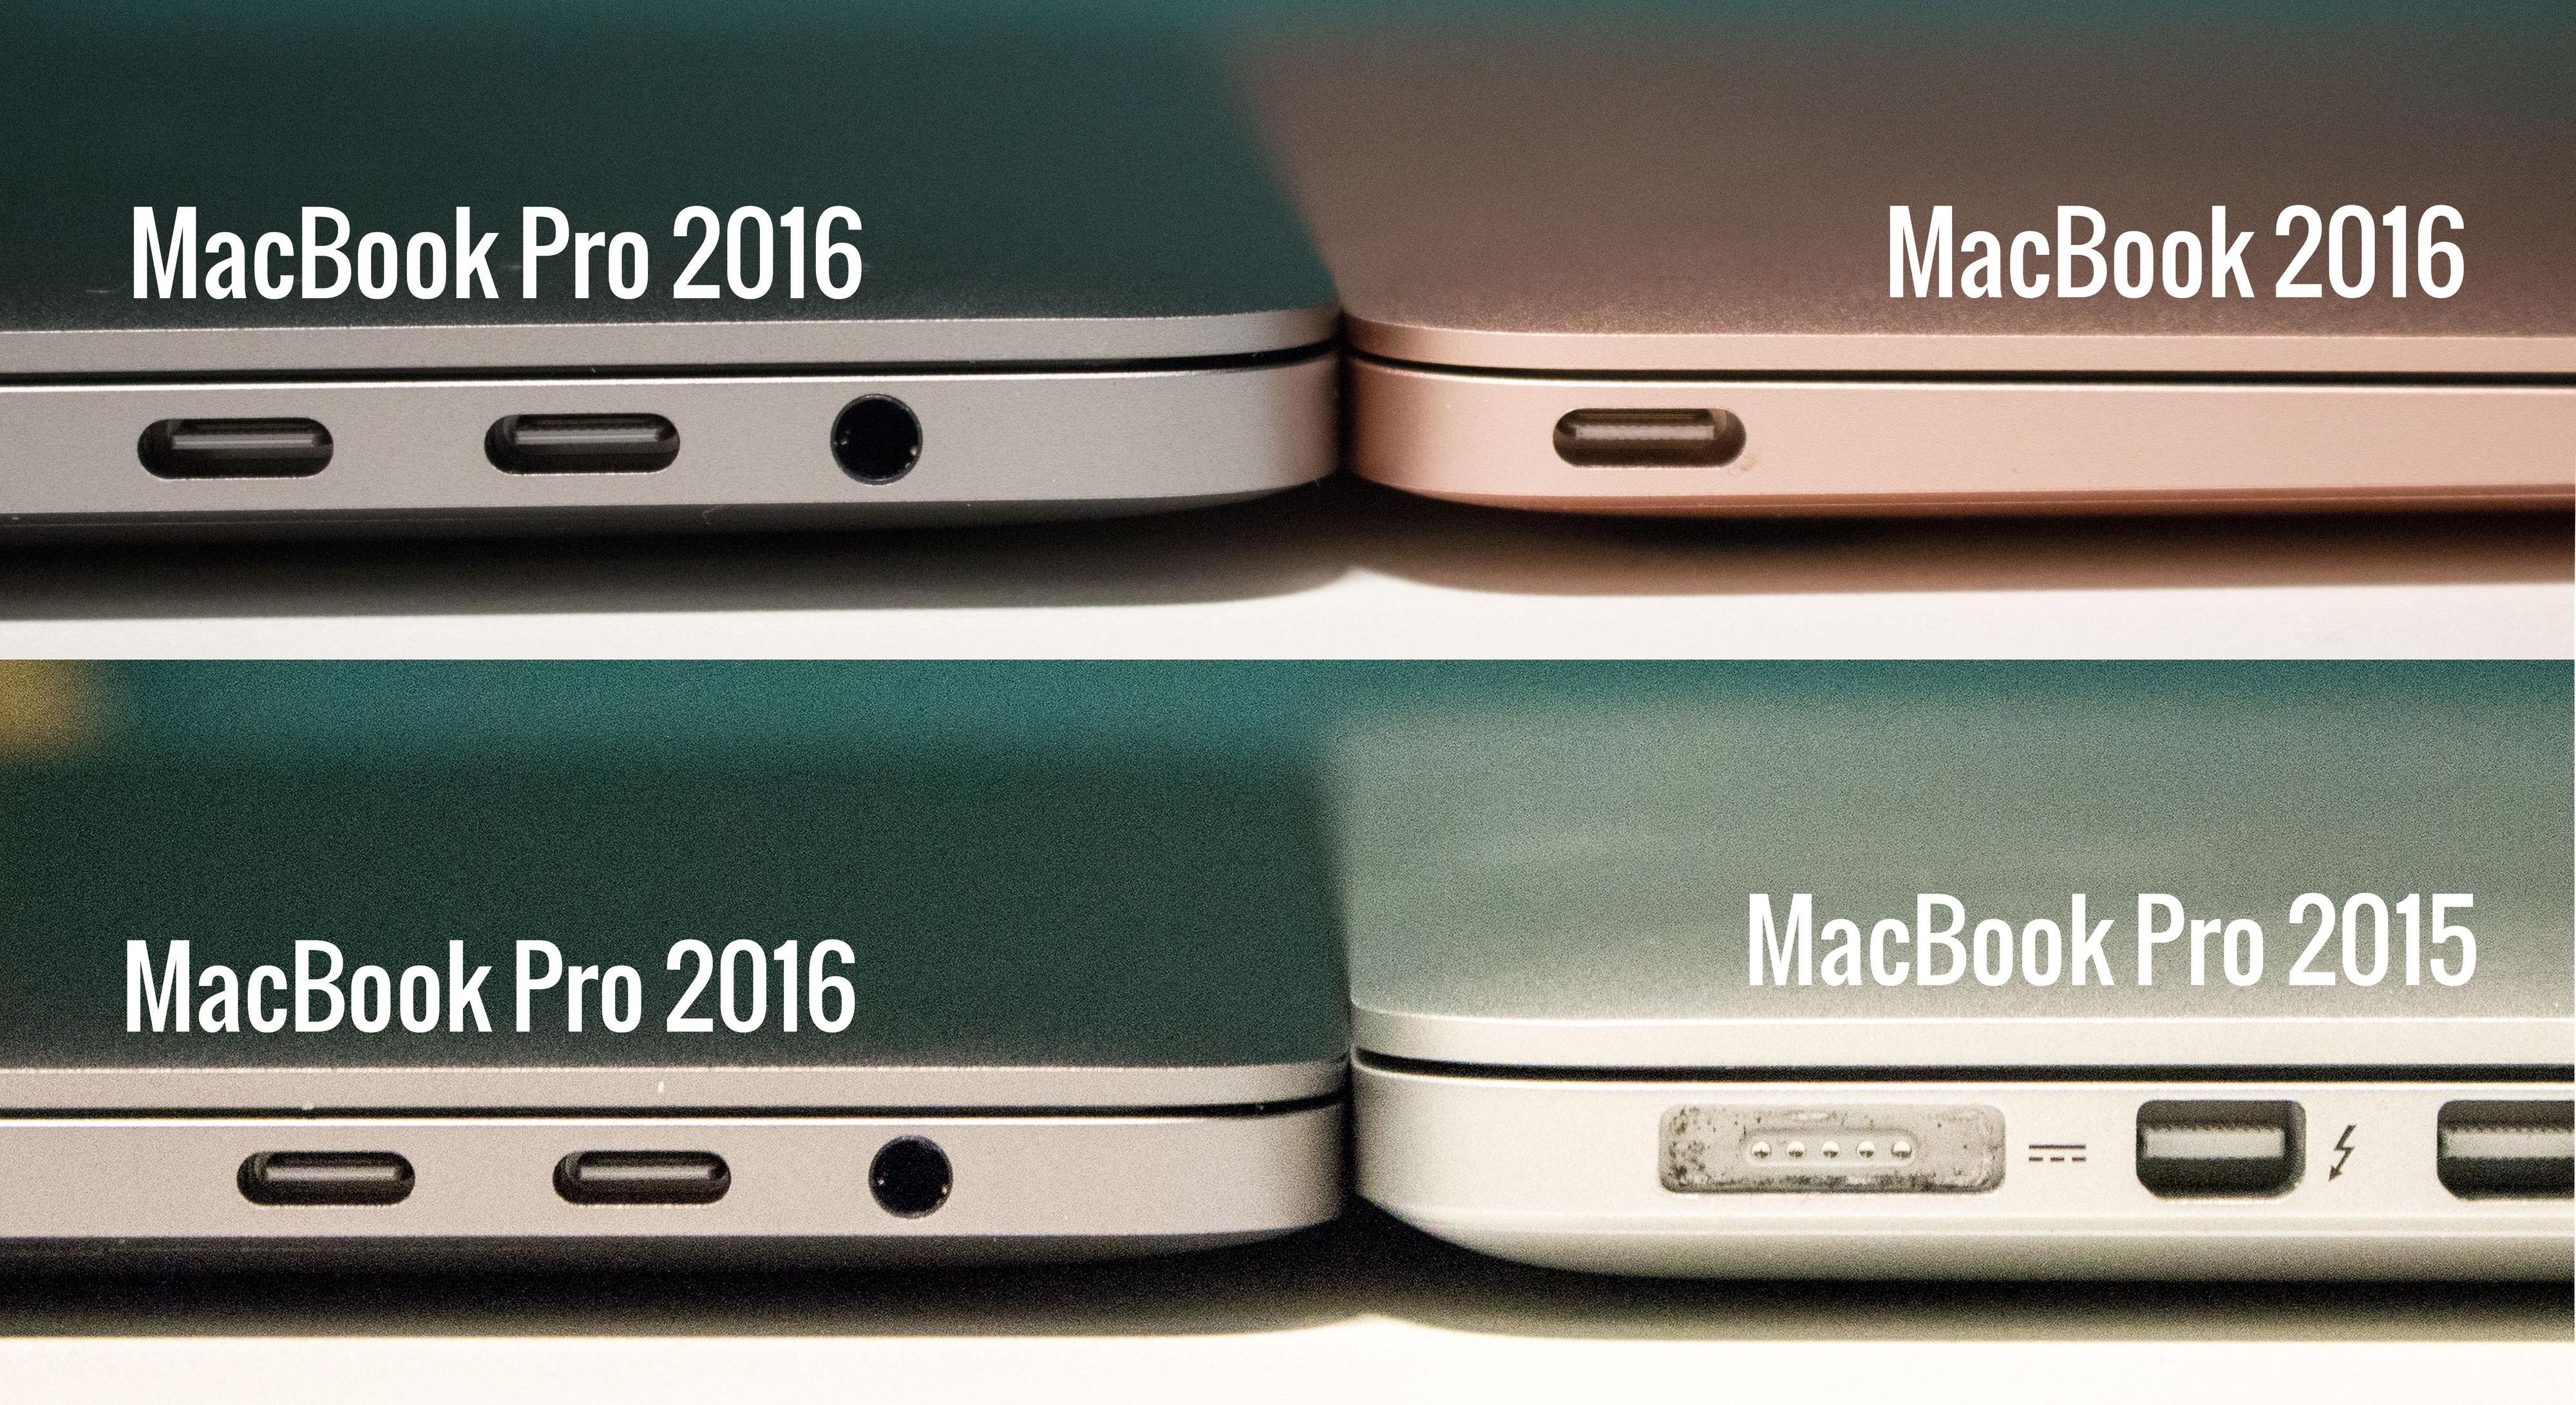 MacBook er enda litt slankere, men det hersker ingen tvil om at også nye MacBook Pro har blitt mer kompakt i forhold til MacBook Pro fra 2015.